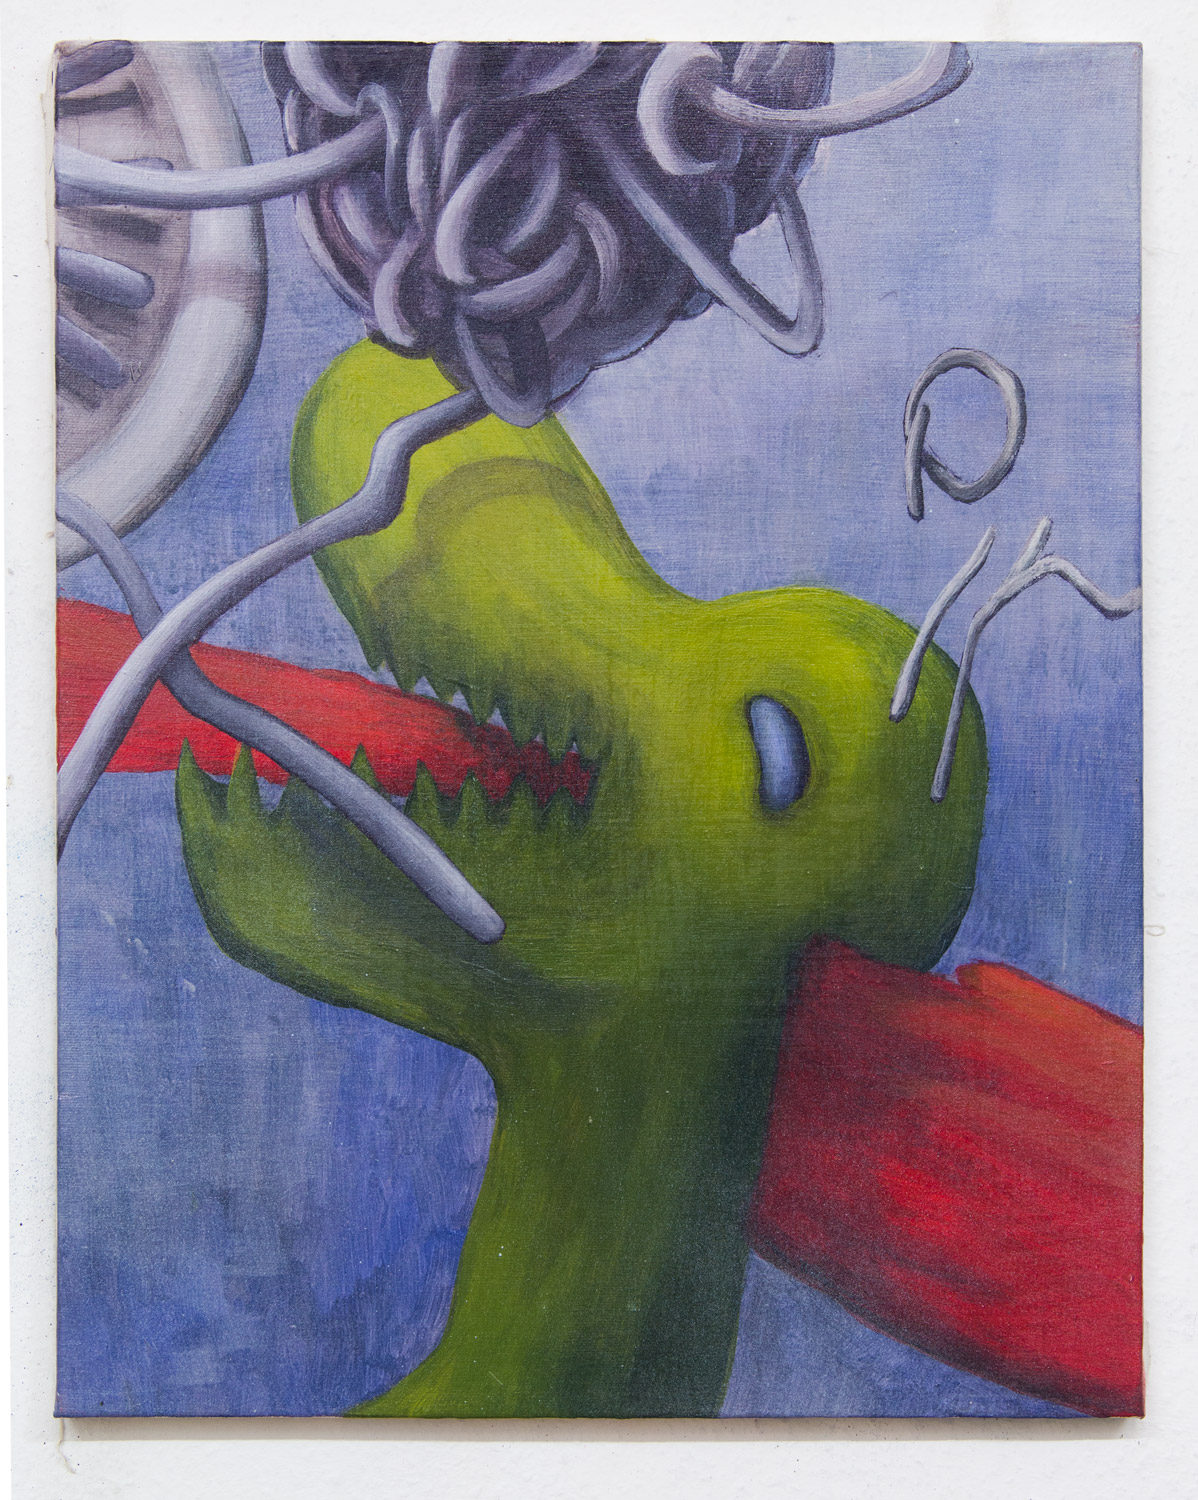 Saurus; 40 x 50 cm; acrylics on canvas; 2017